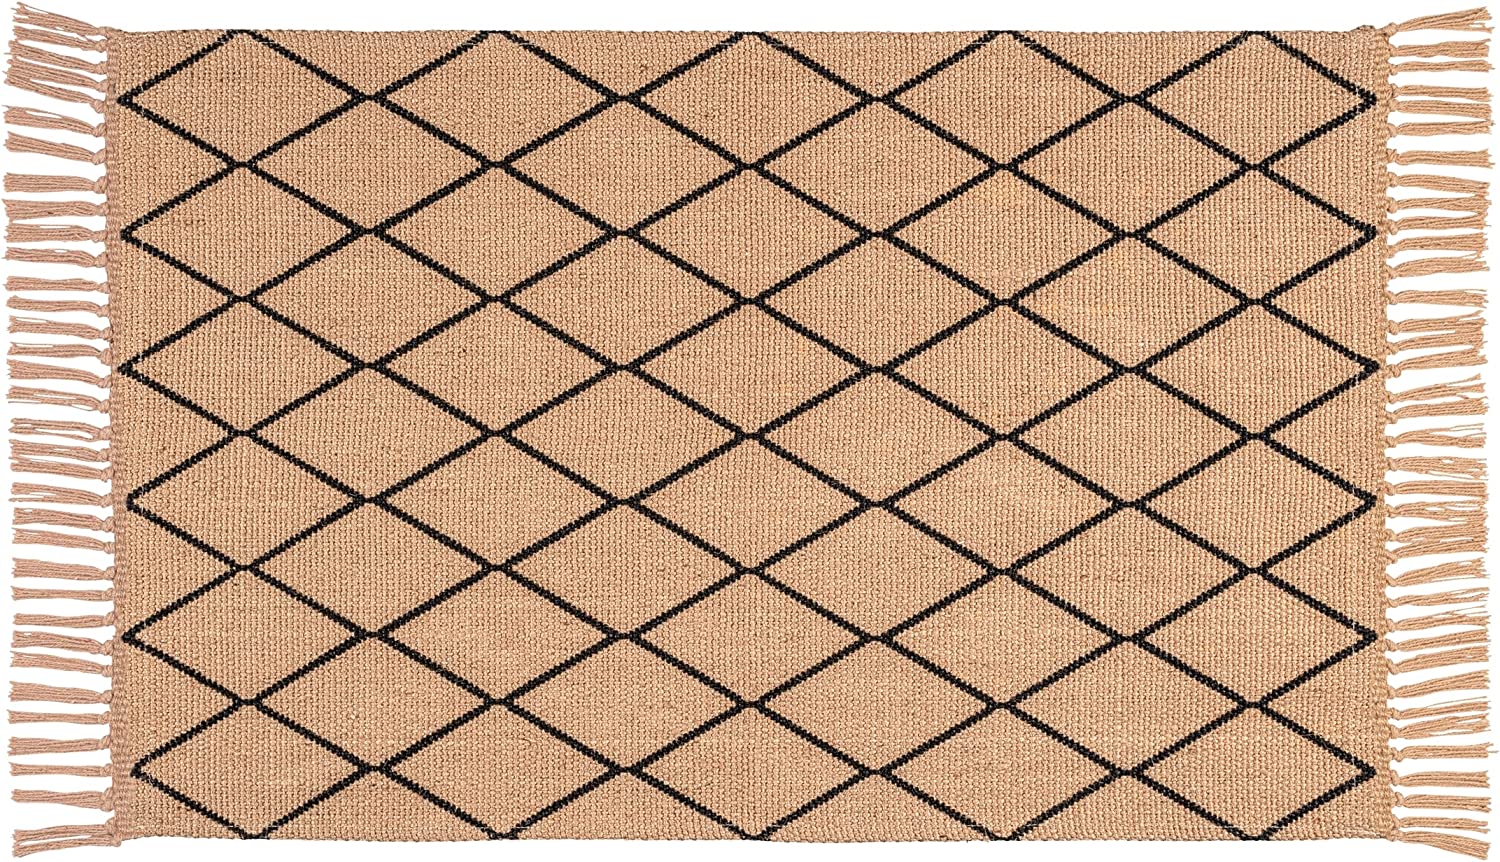 Badematte Calama, Bad-Teppich aus nachhaltigen Naturfasern (100% Jute) mit Rauten-Muster und Fransen als Duschvorleger oder dekorativer Teppich, recycelbar, (B x T): 50 x 80 cm, Natur